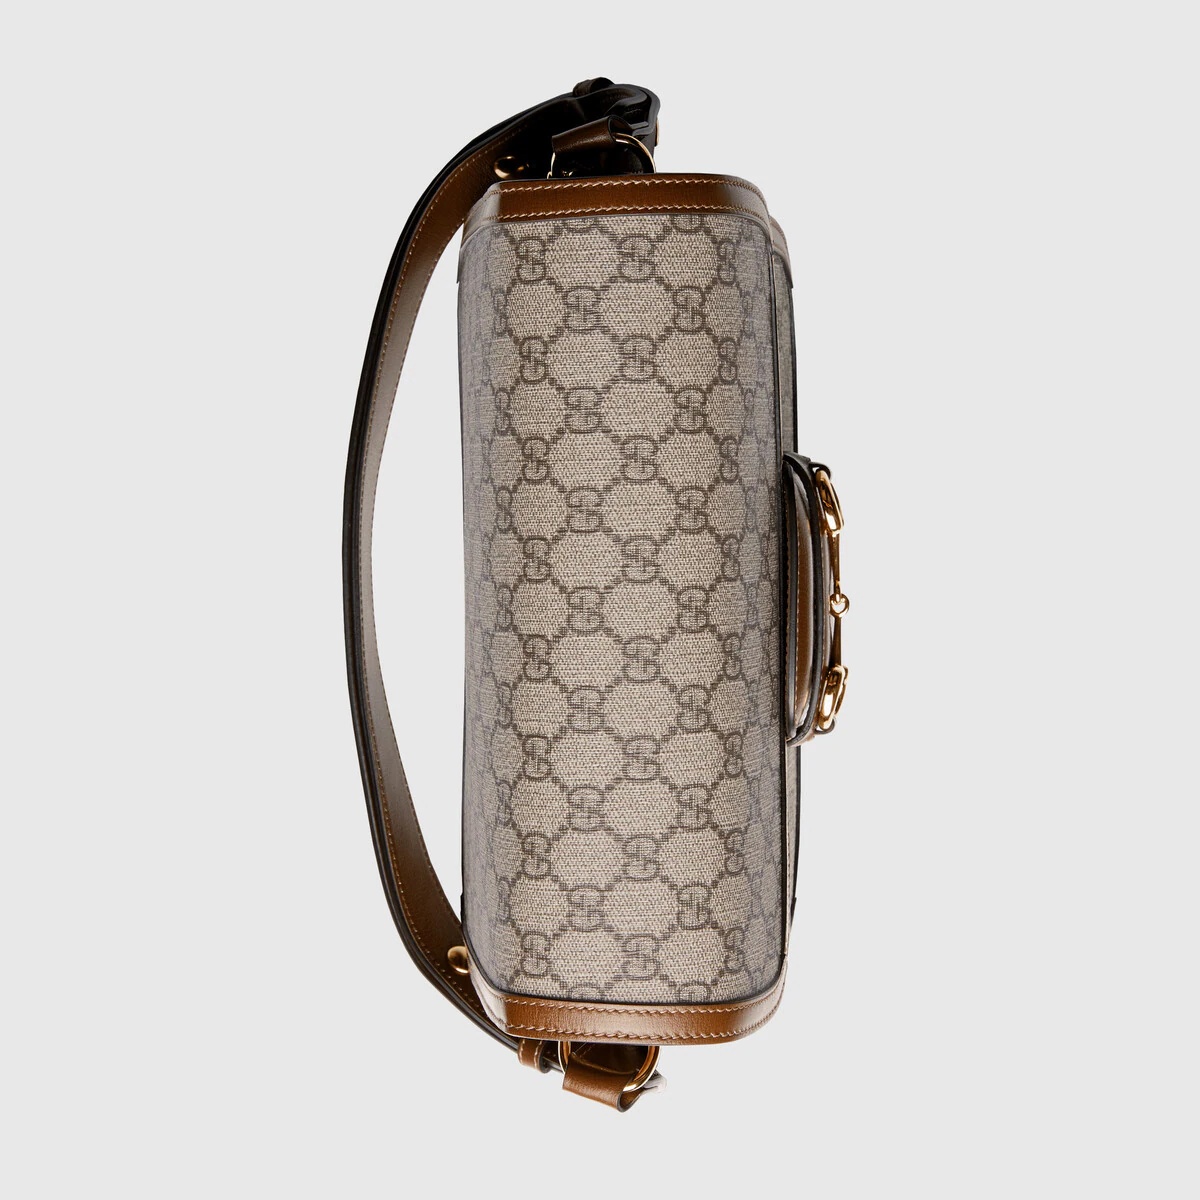 Gucci Horsebit 1955 shoulder bag - 5